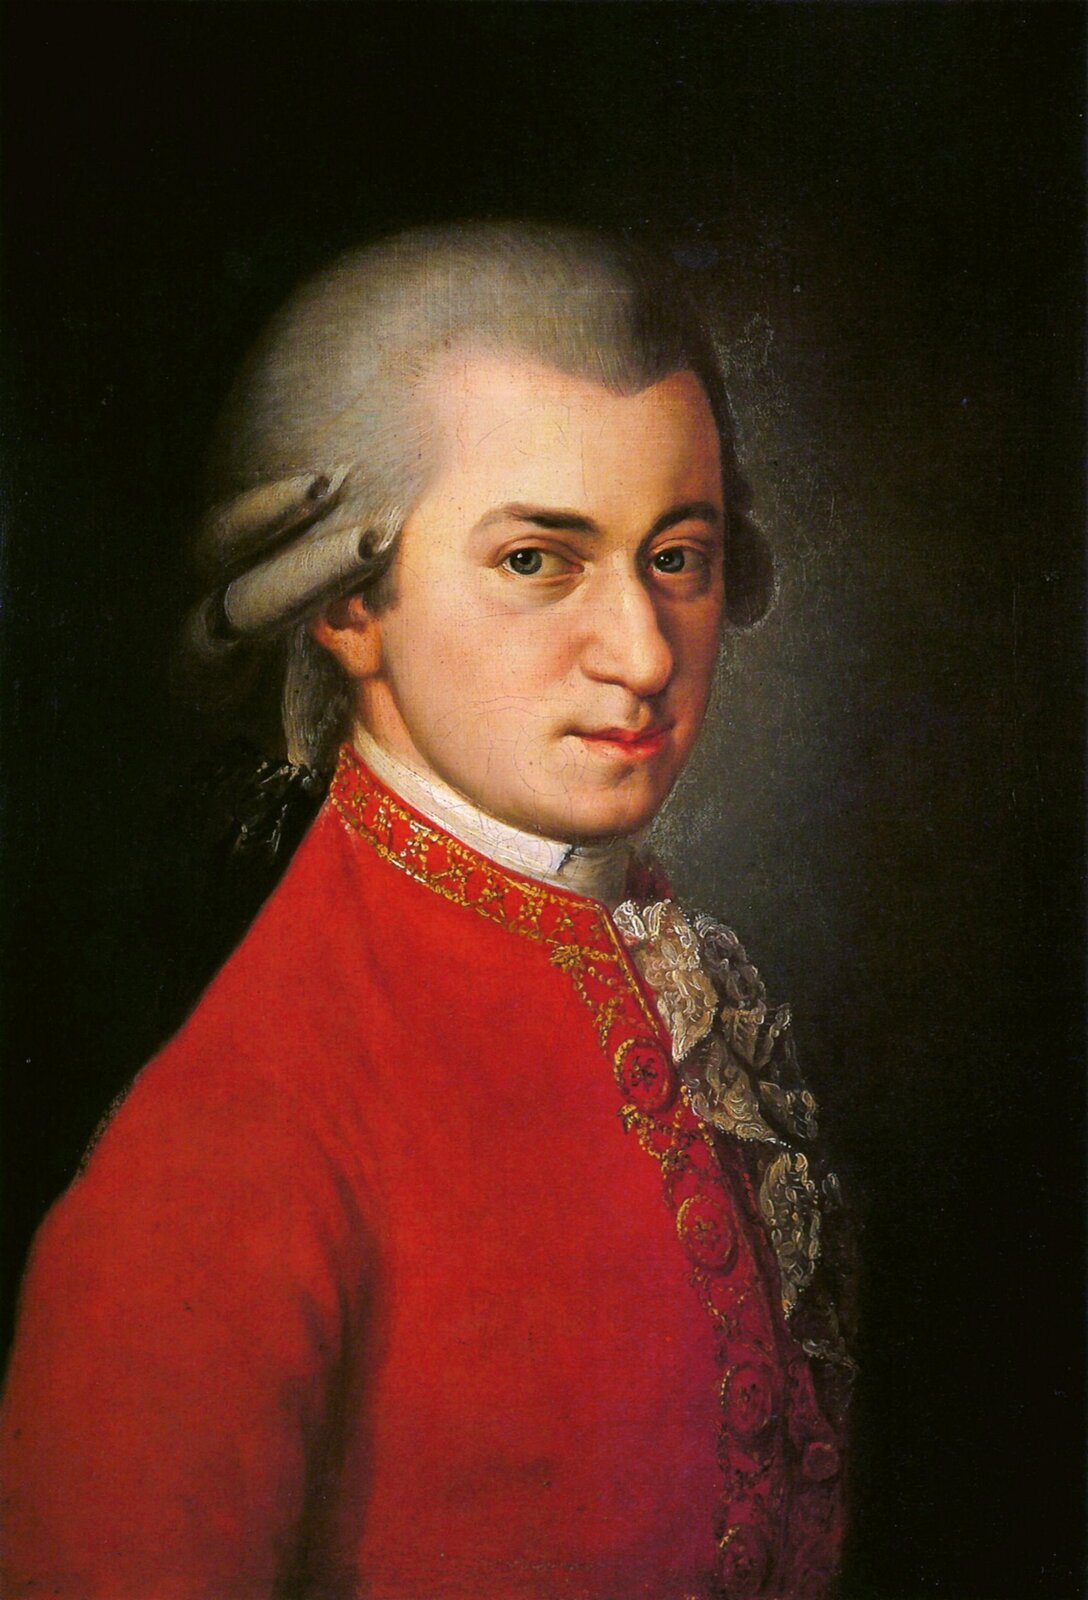 Obraz przedstawiający portret kompozytora Wolfganga Amadeusza Mozarta. Dzieło zostało namalowane przez Barbarę Krafft. Na obrazie dość młody mężczyzna, raczej drobnej postury, twarz raczej pociągła, dość duży nos, wąskie usta, niebieskie oczy. Na głowie biała peruka, na wysokości ucha ułożone loki, z tyłu pozostałe włosy związane kokardą. Ubrany w białą koszulę z koronkowym żabotem i czerwony surdut. Tło obrazu: ciemne światło pada na połowę twarzy mężczyzny.